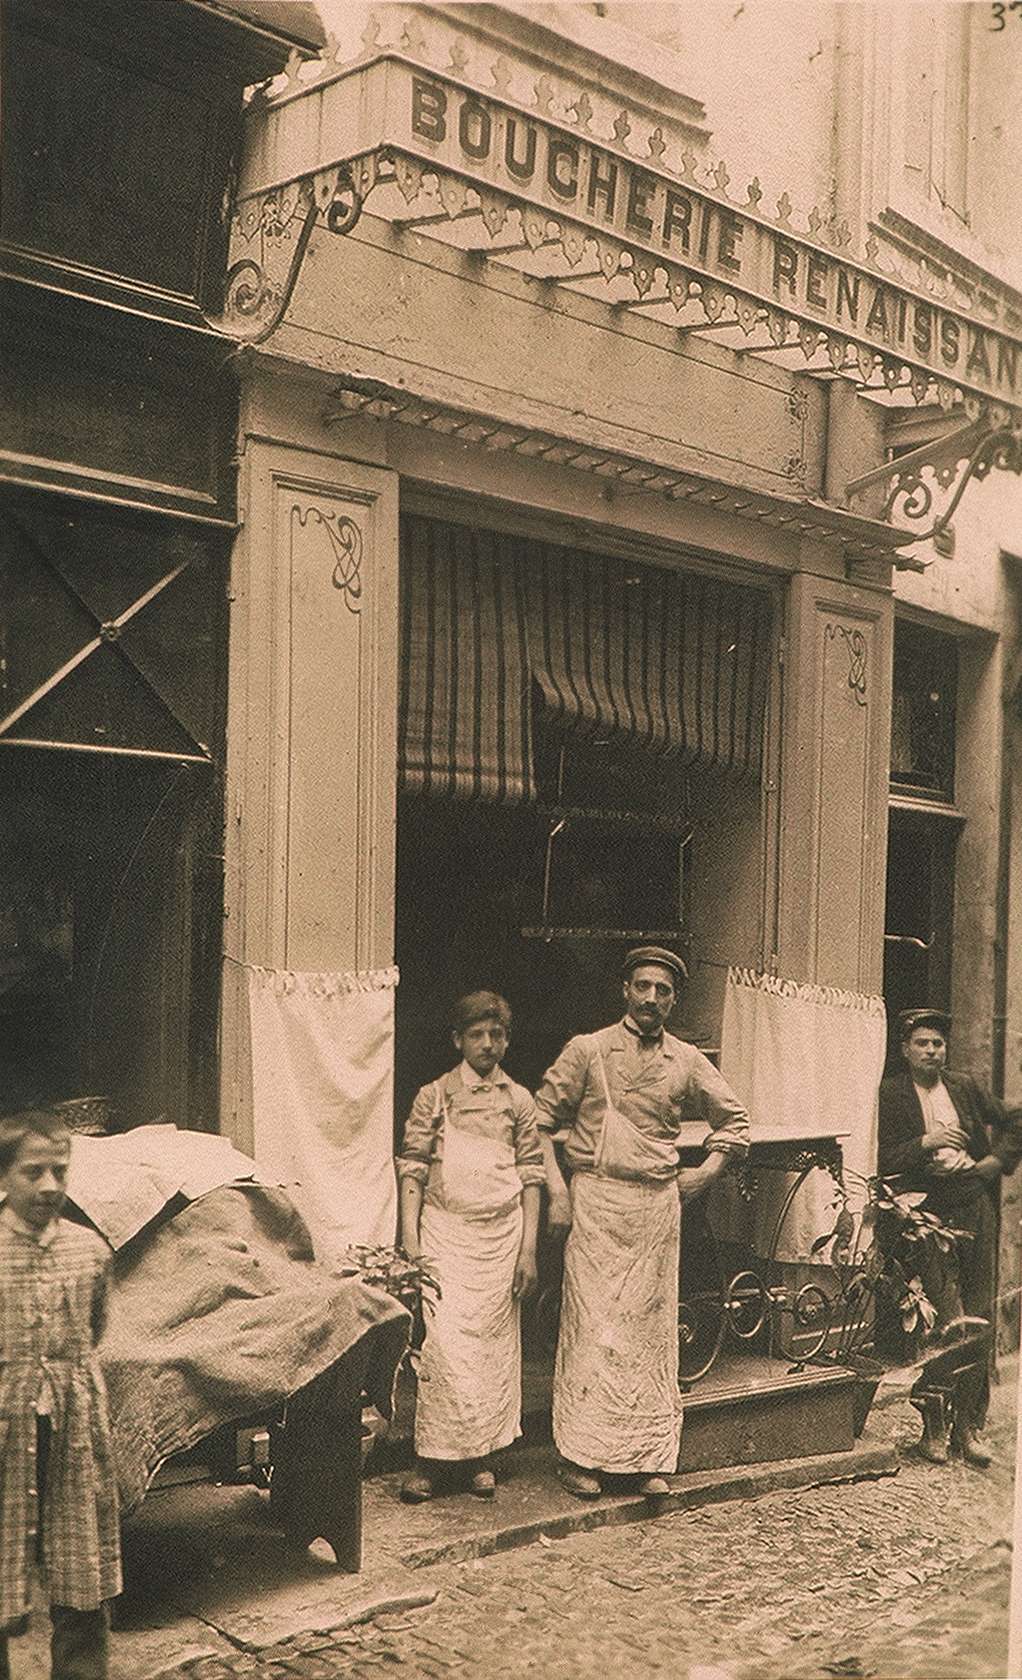 Boucherie Rennaissance, photographie autour de 1900. Archives de la ville de Montpellier